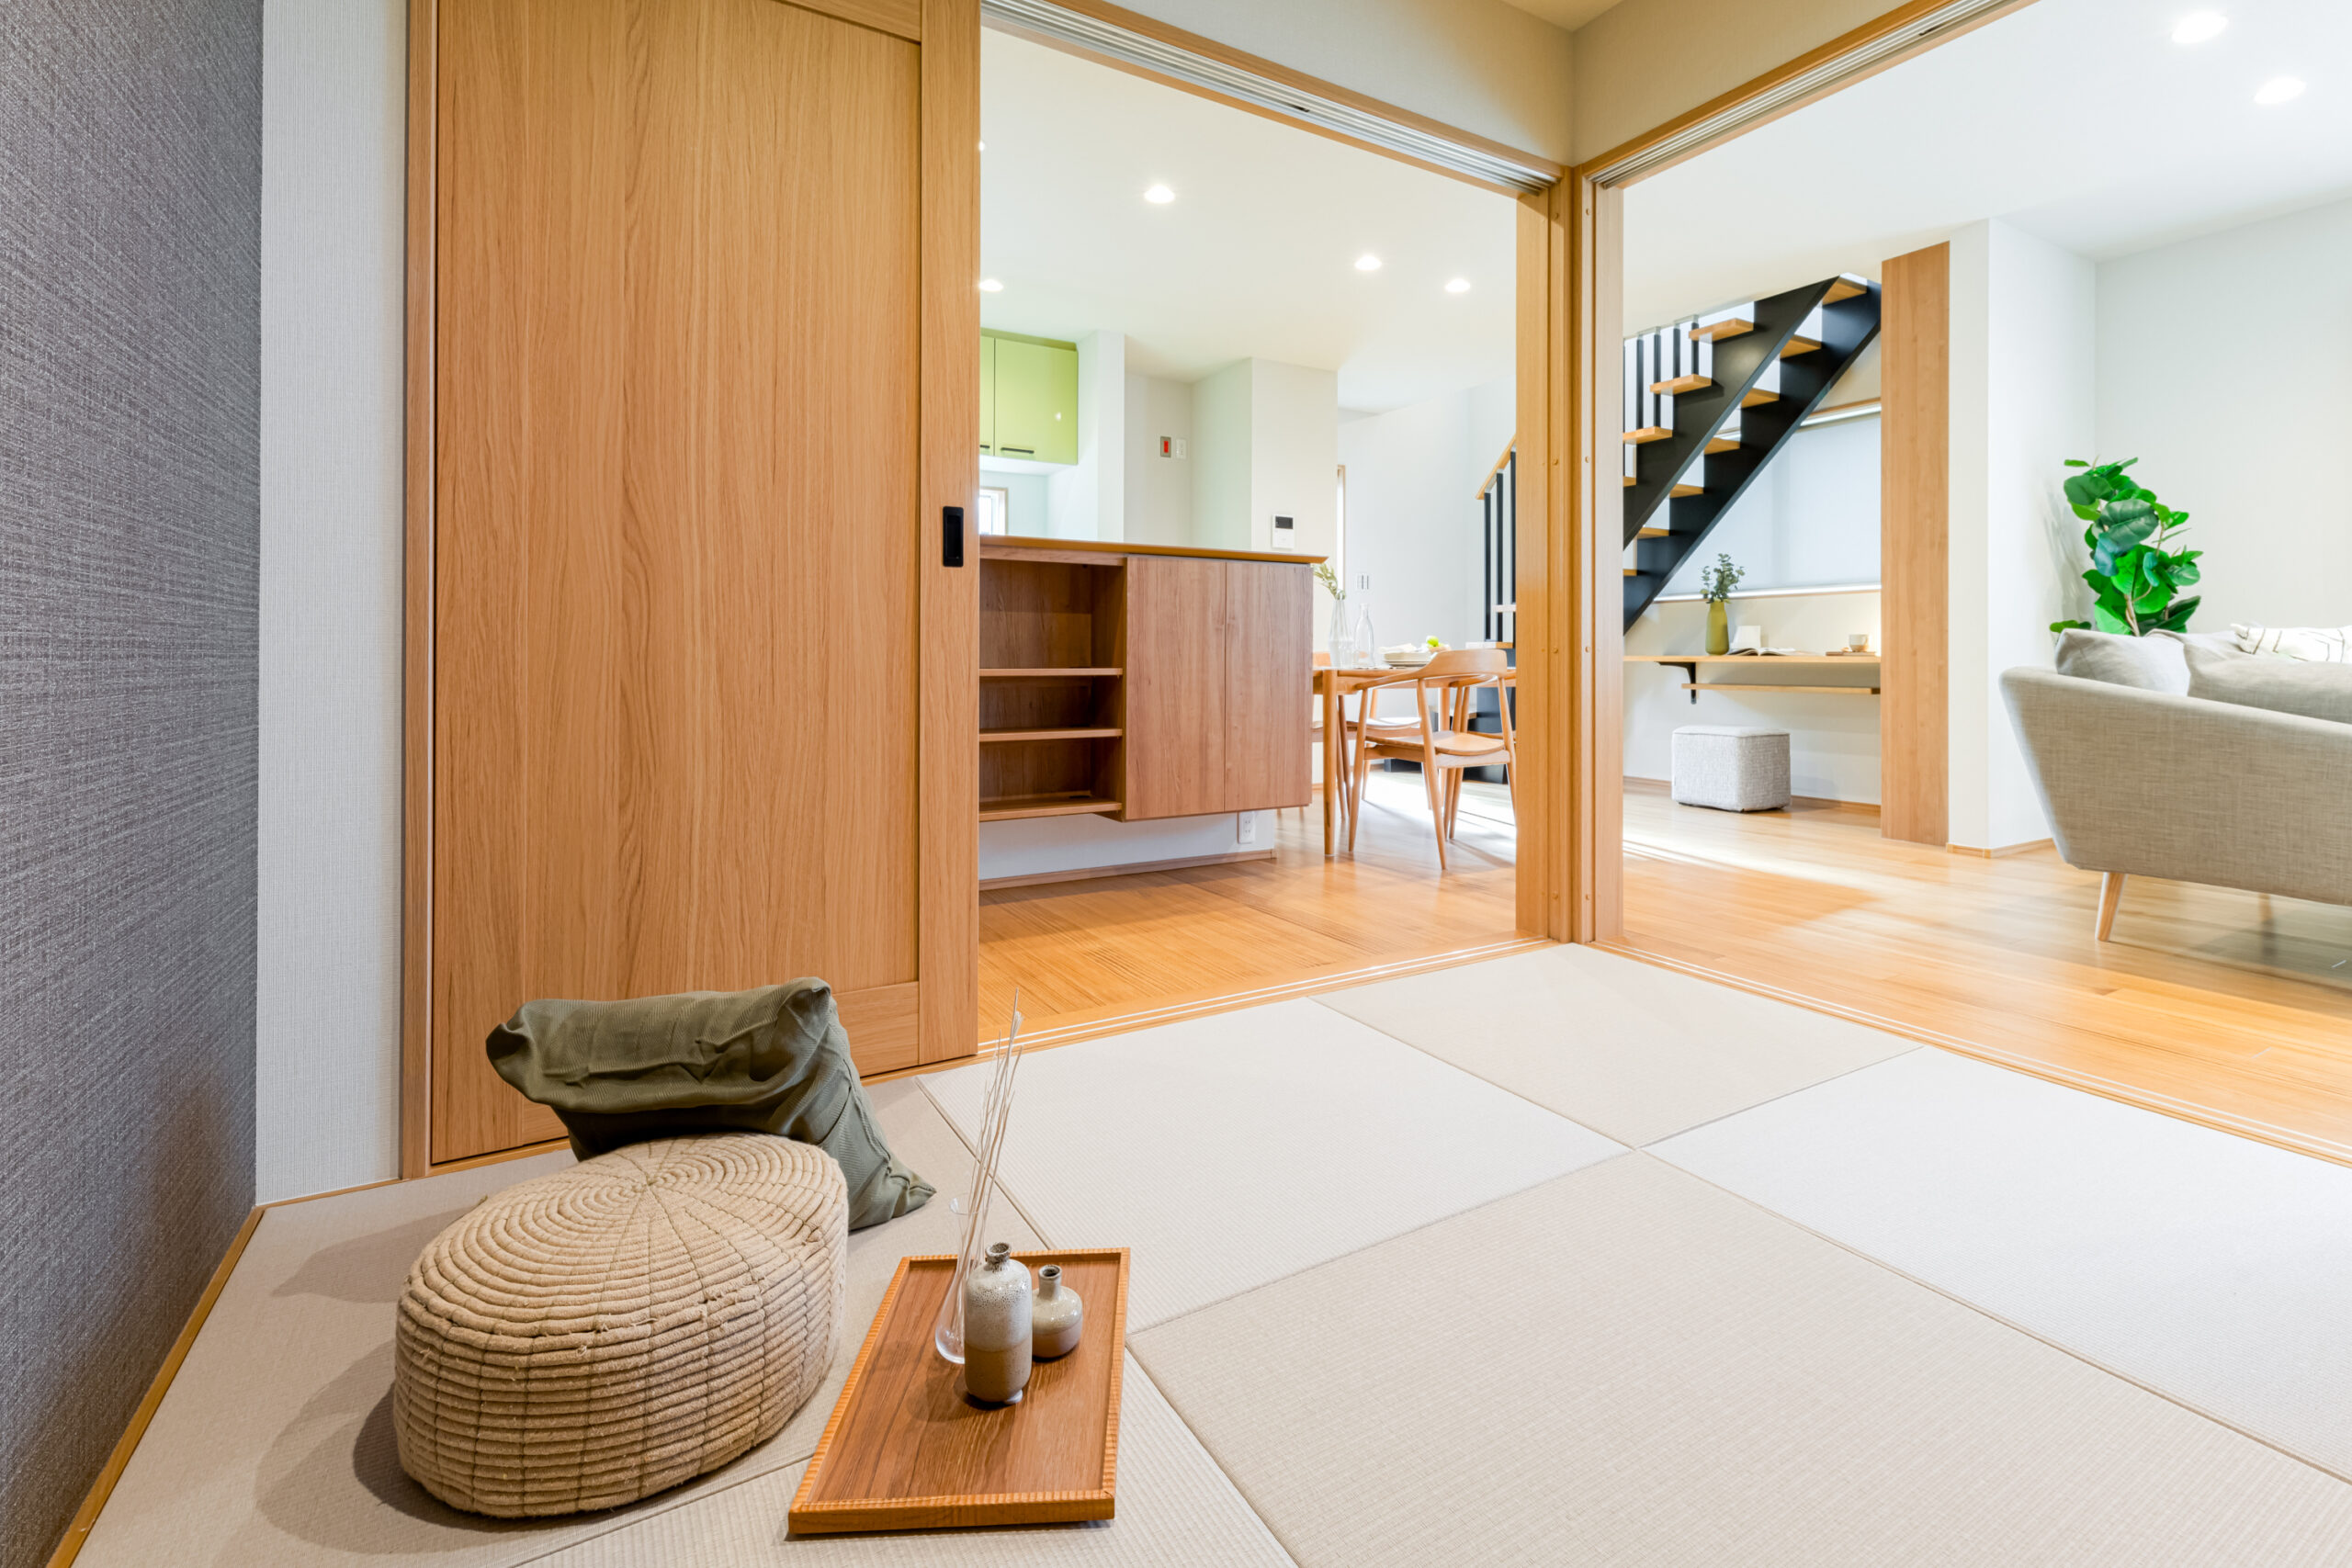 【京都府木津川市】延床面積28.8坪でこの充実さ。趣味部屋が素敵なお家